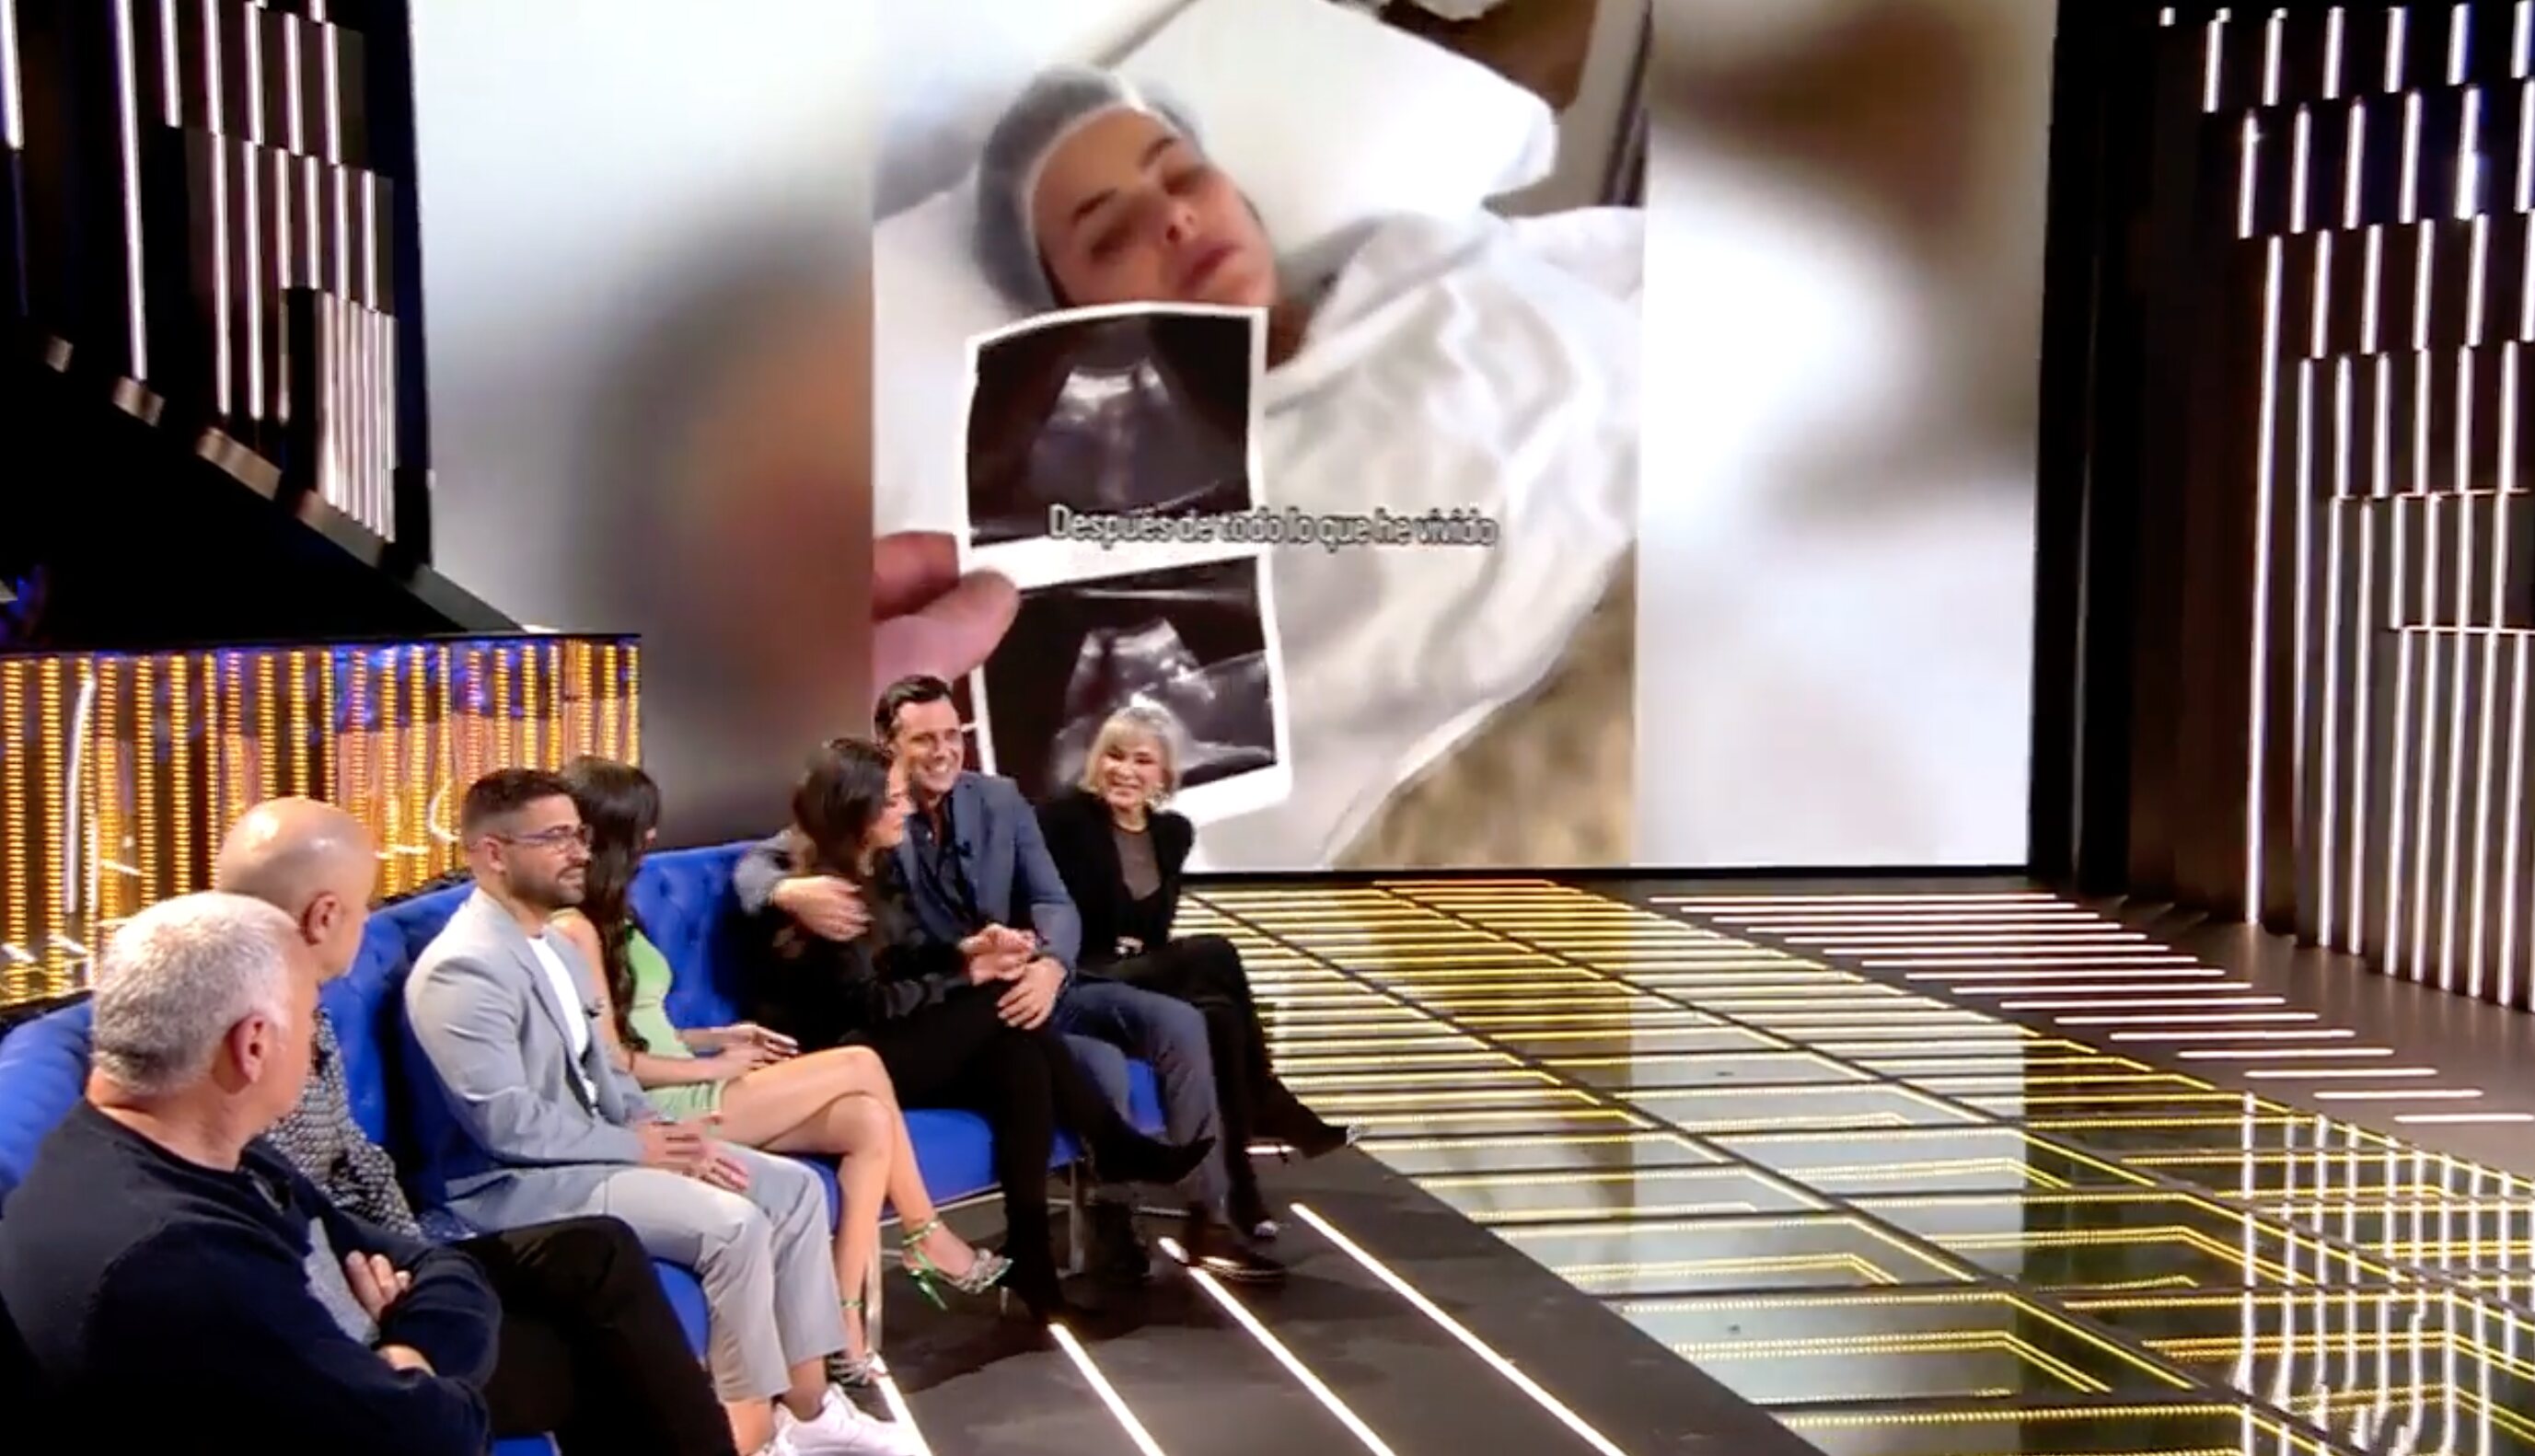 Marta Peñate está en pleno proceso médico de quedarse embarazada | Foto: Telecinco.es